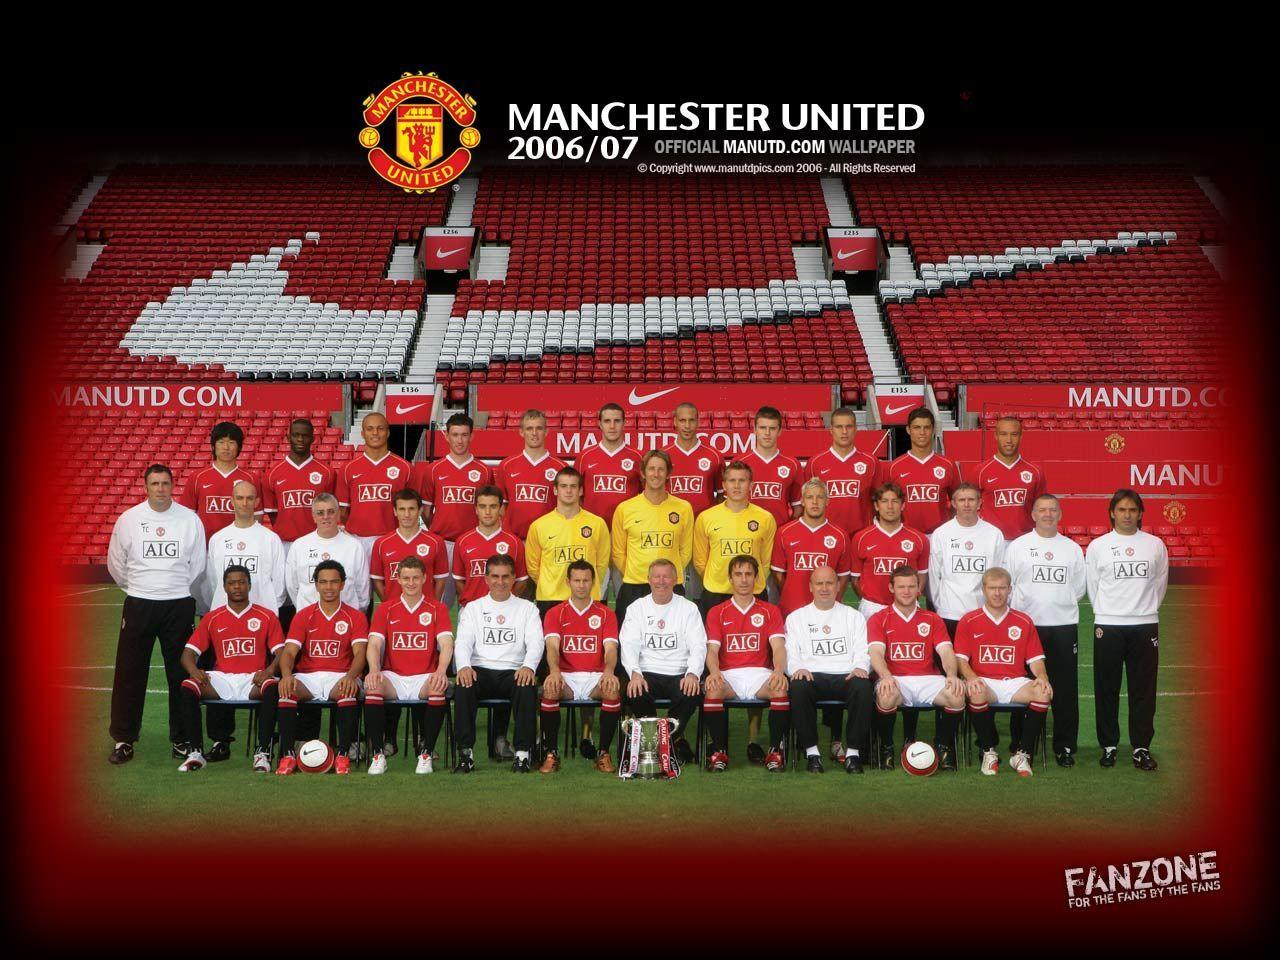 Manchester United Wallpaper HD 2013 20. Football Wallpaper HD